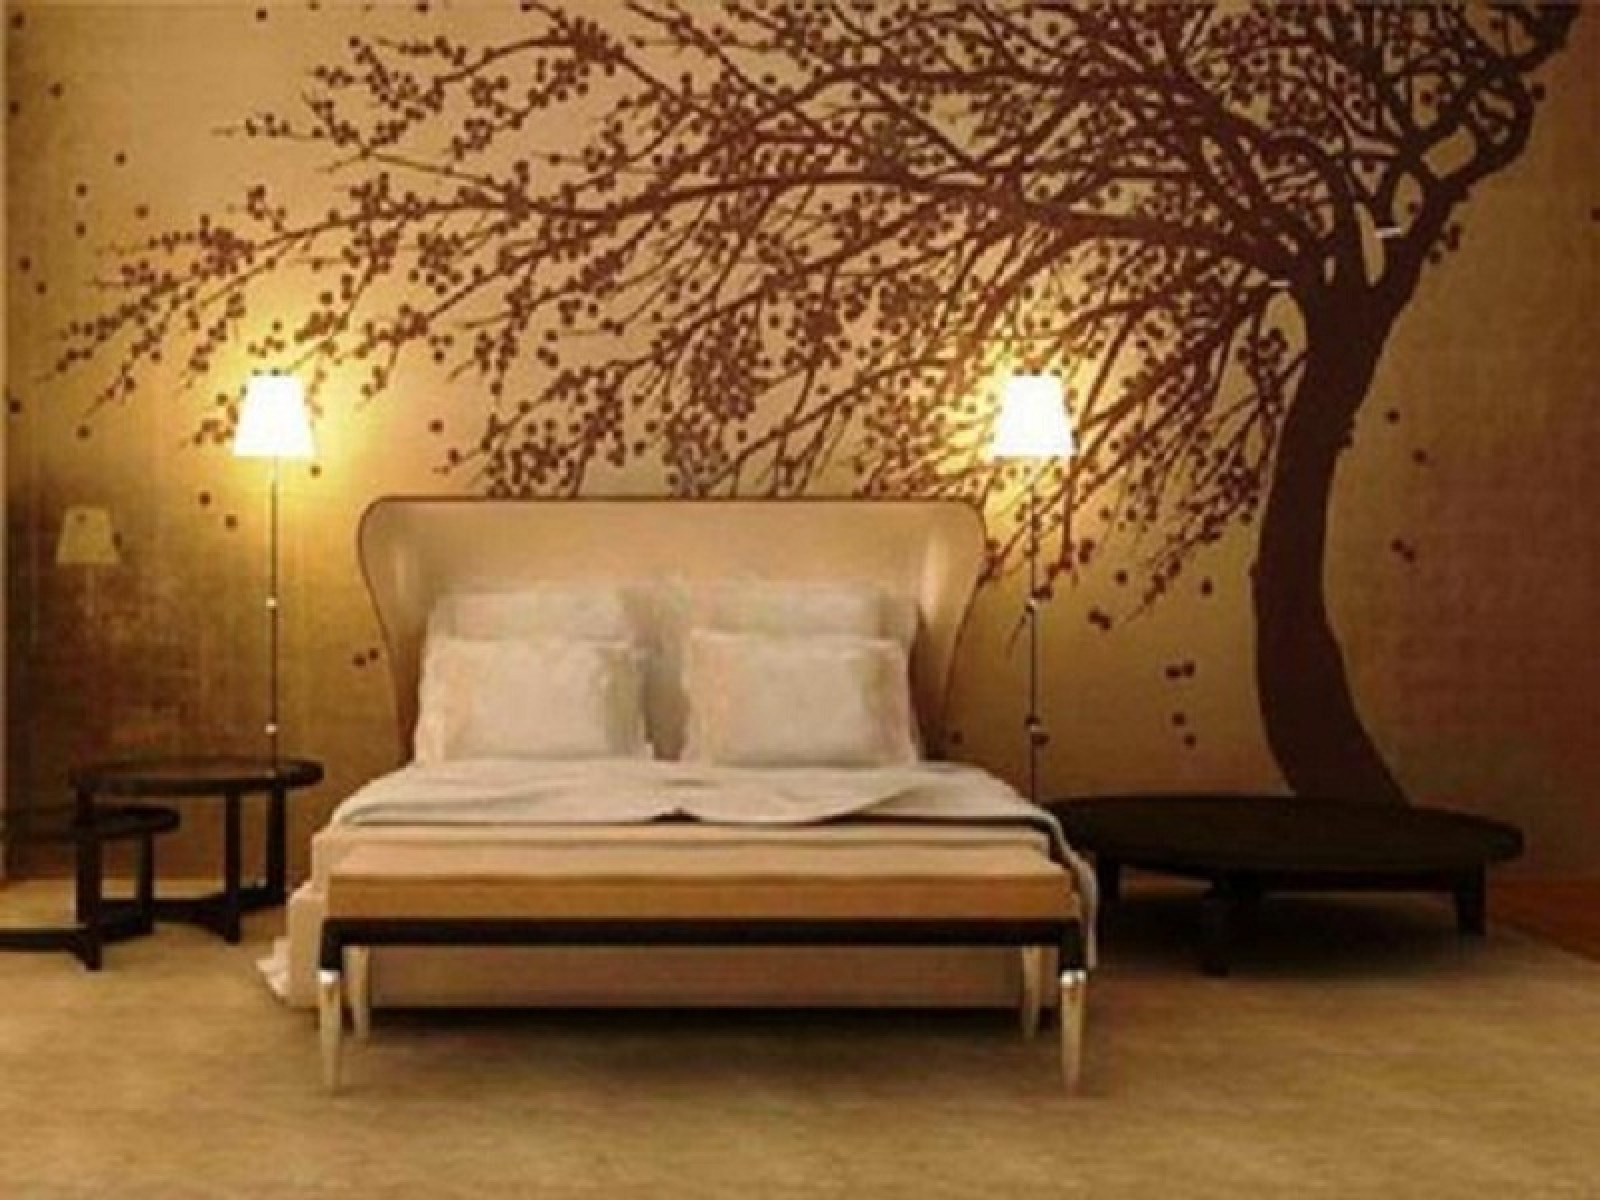 Wallpaper Design For Bedroom
 30 Best Diy Wallpaper Designs for Bedrooms UK 2015